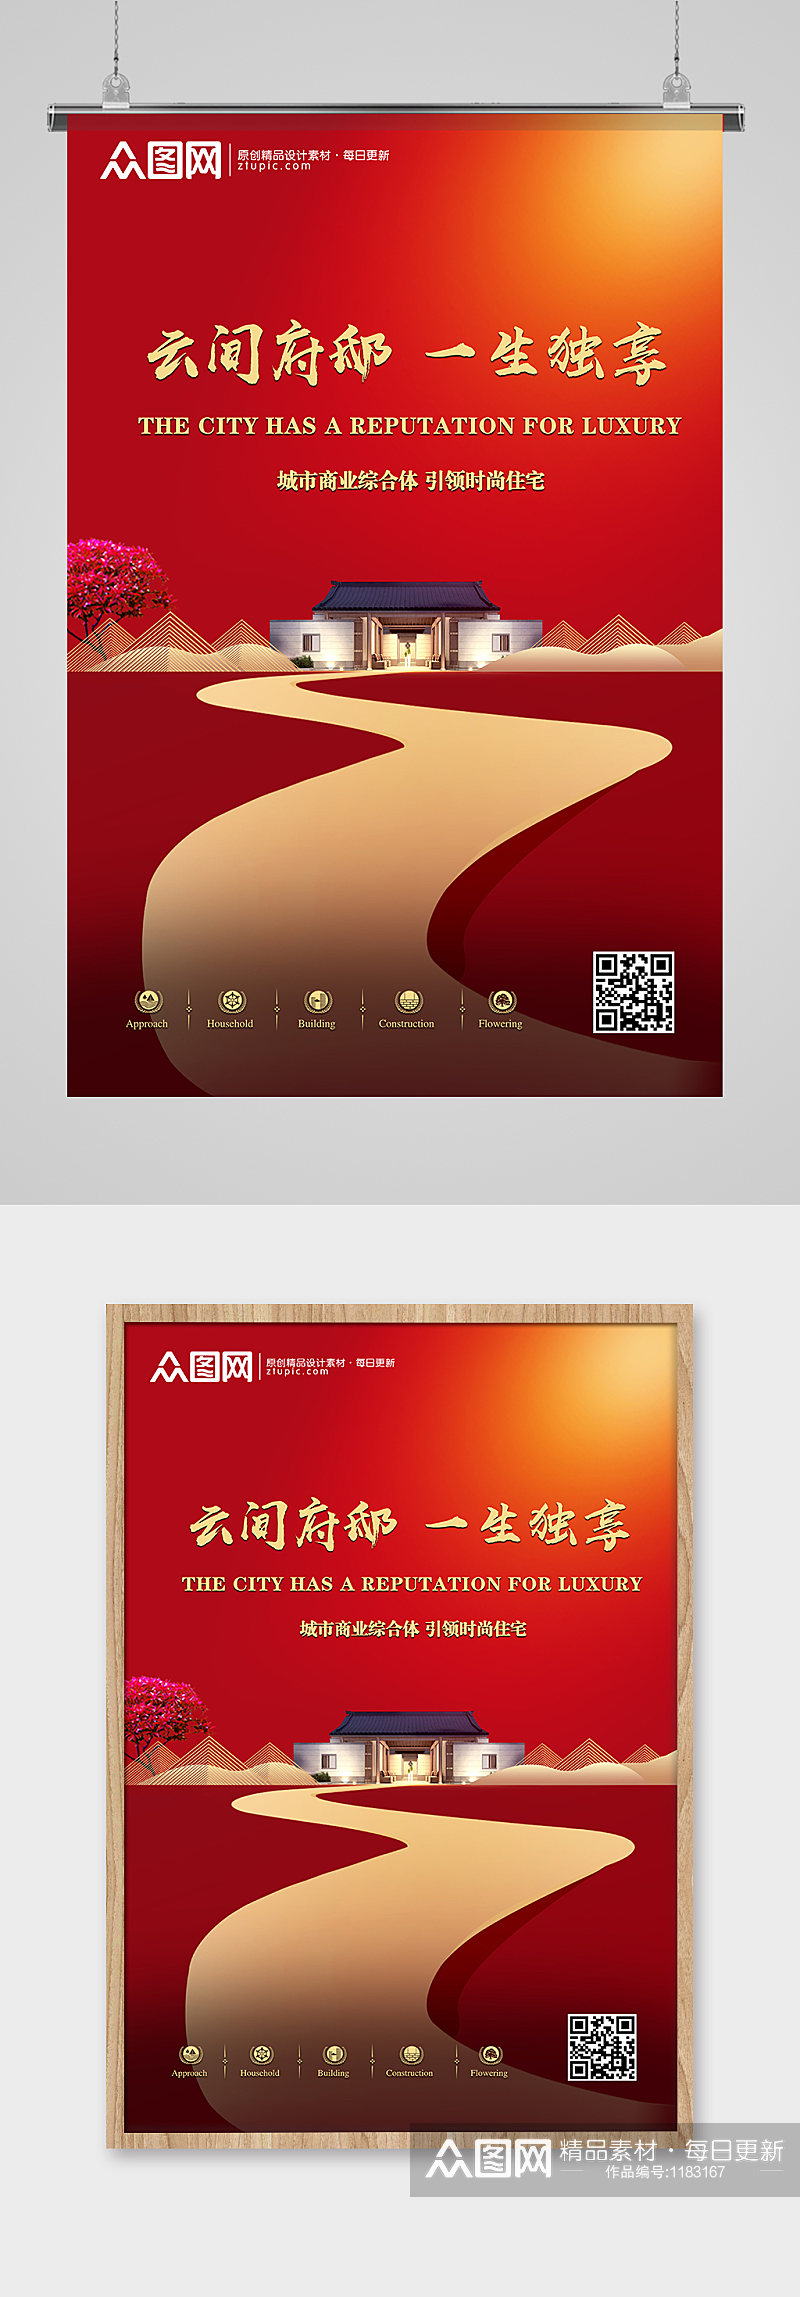 红色简约地产广告中国风售楼处宣传海报素材